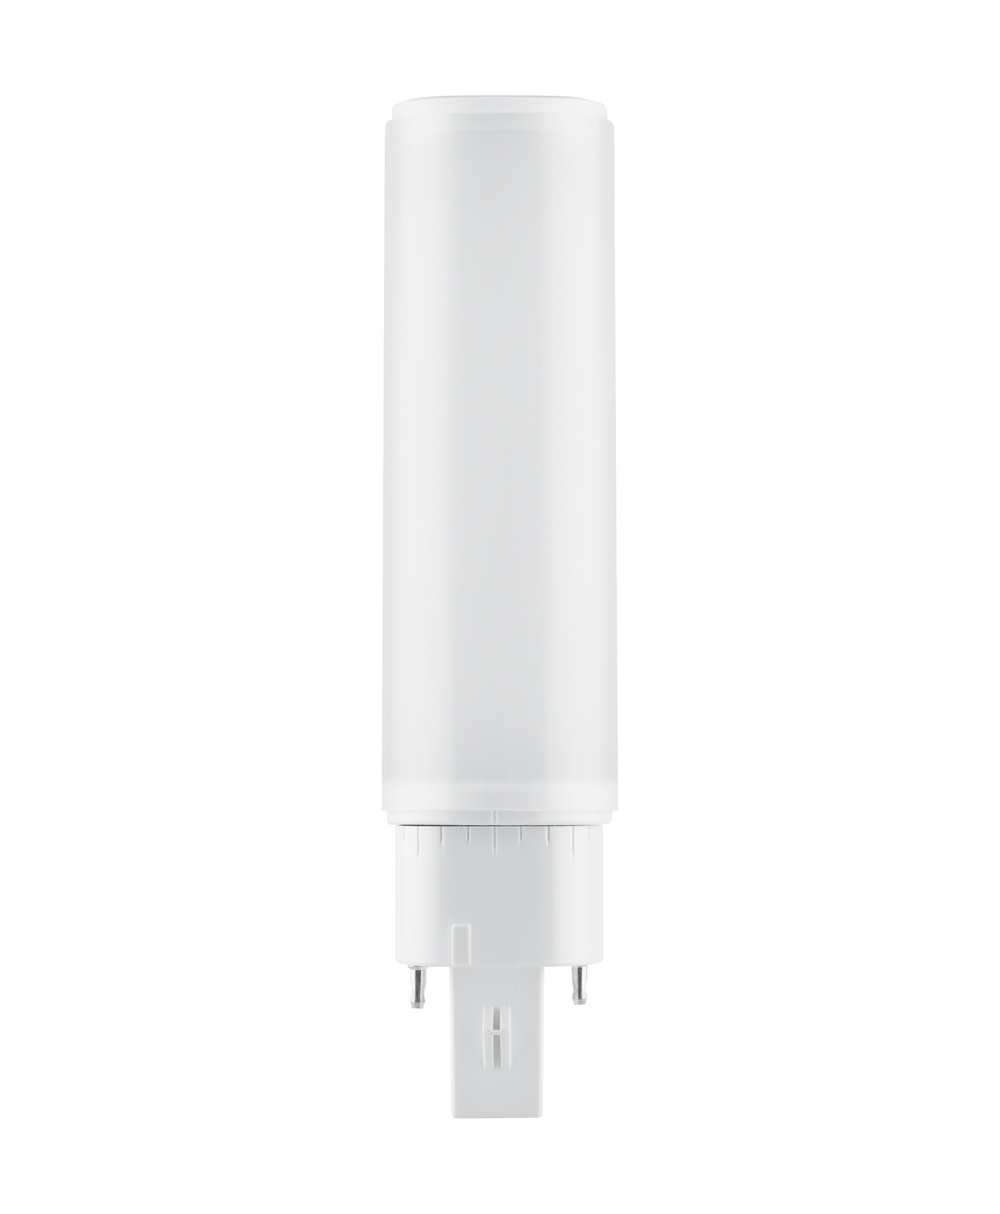 Ledvance LED lamp Osram DULUX D/E LED HF & AC Mains 7 W/3000 K – replacement for KLLNI 18 W